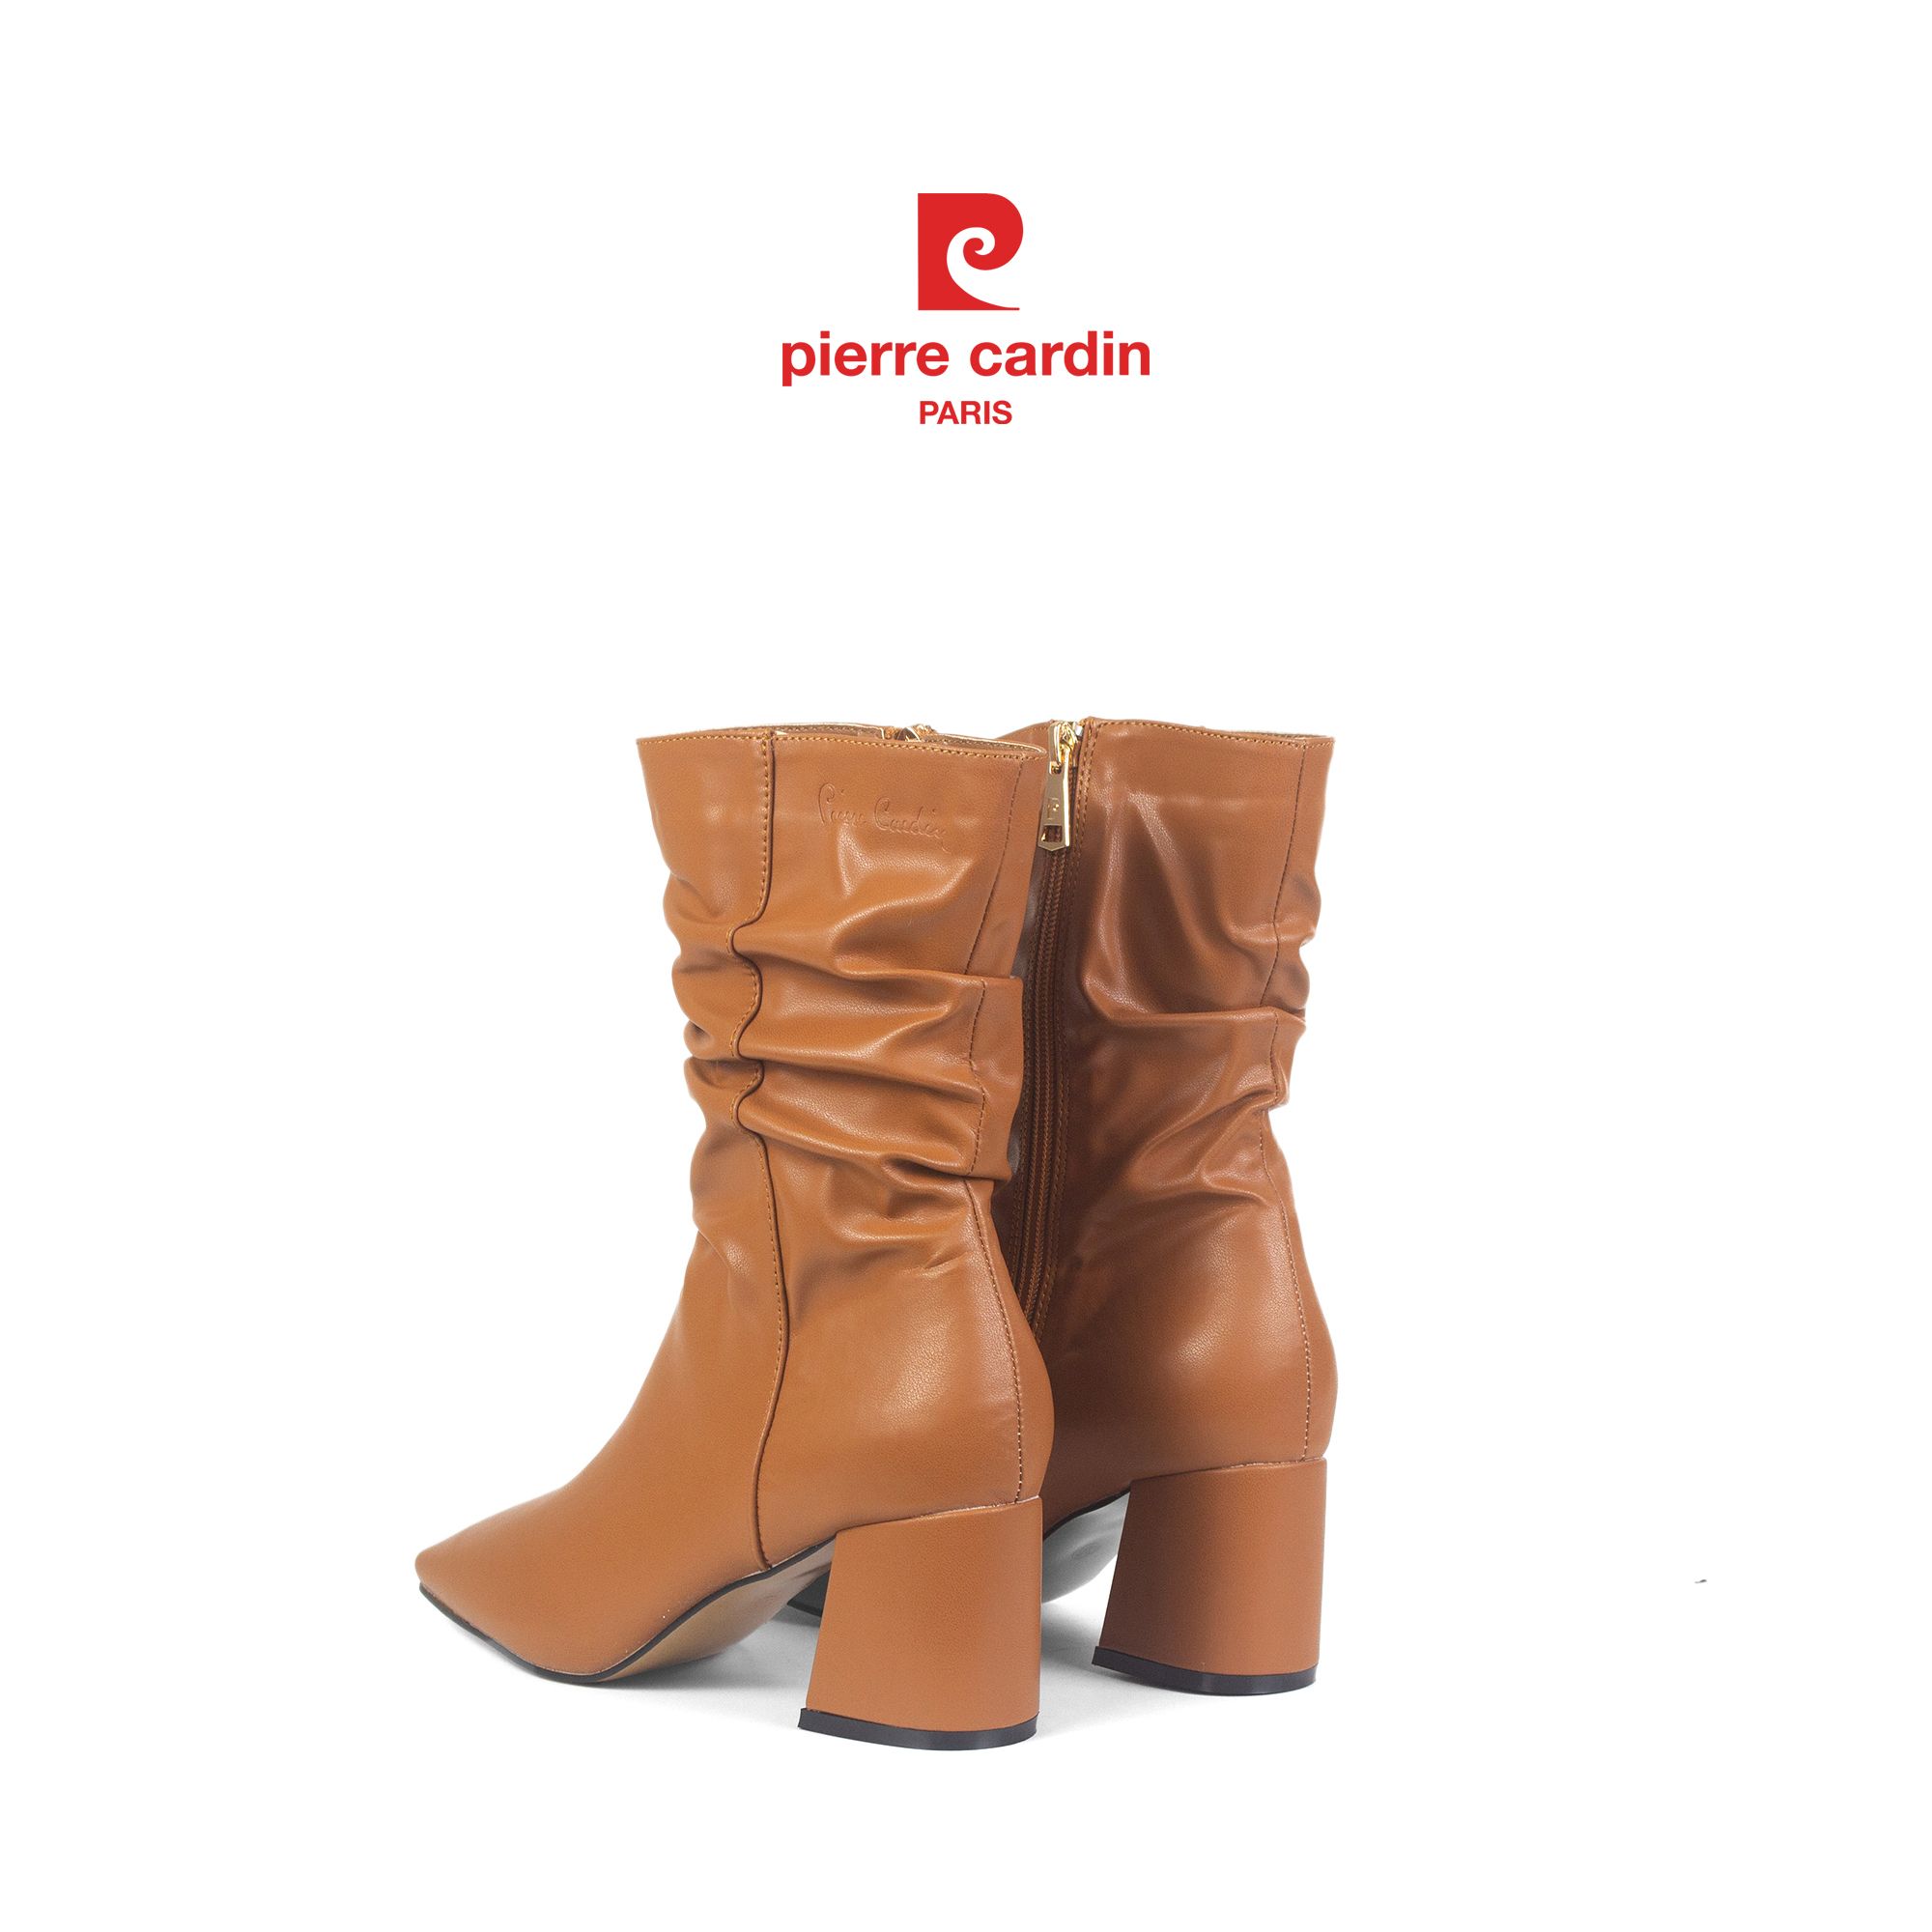 Pierre Cadin Paris Vietnam: Giày Boots Nữ Cổ Cao Pierre Cardin - PCWFWMH 246 (GOLD)